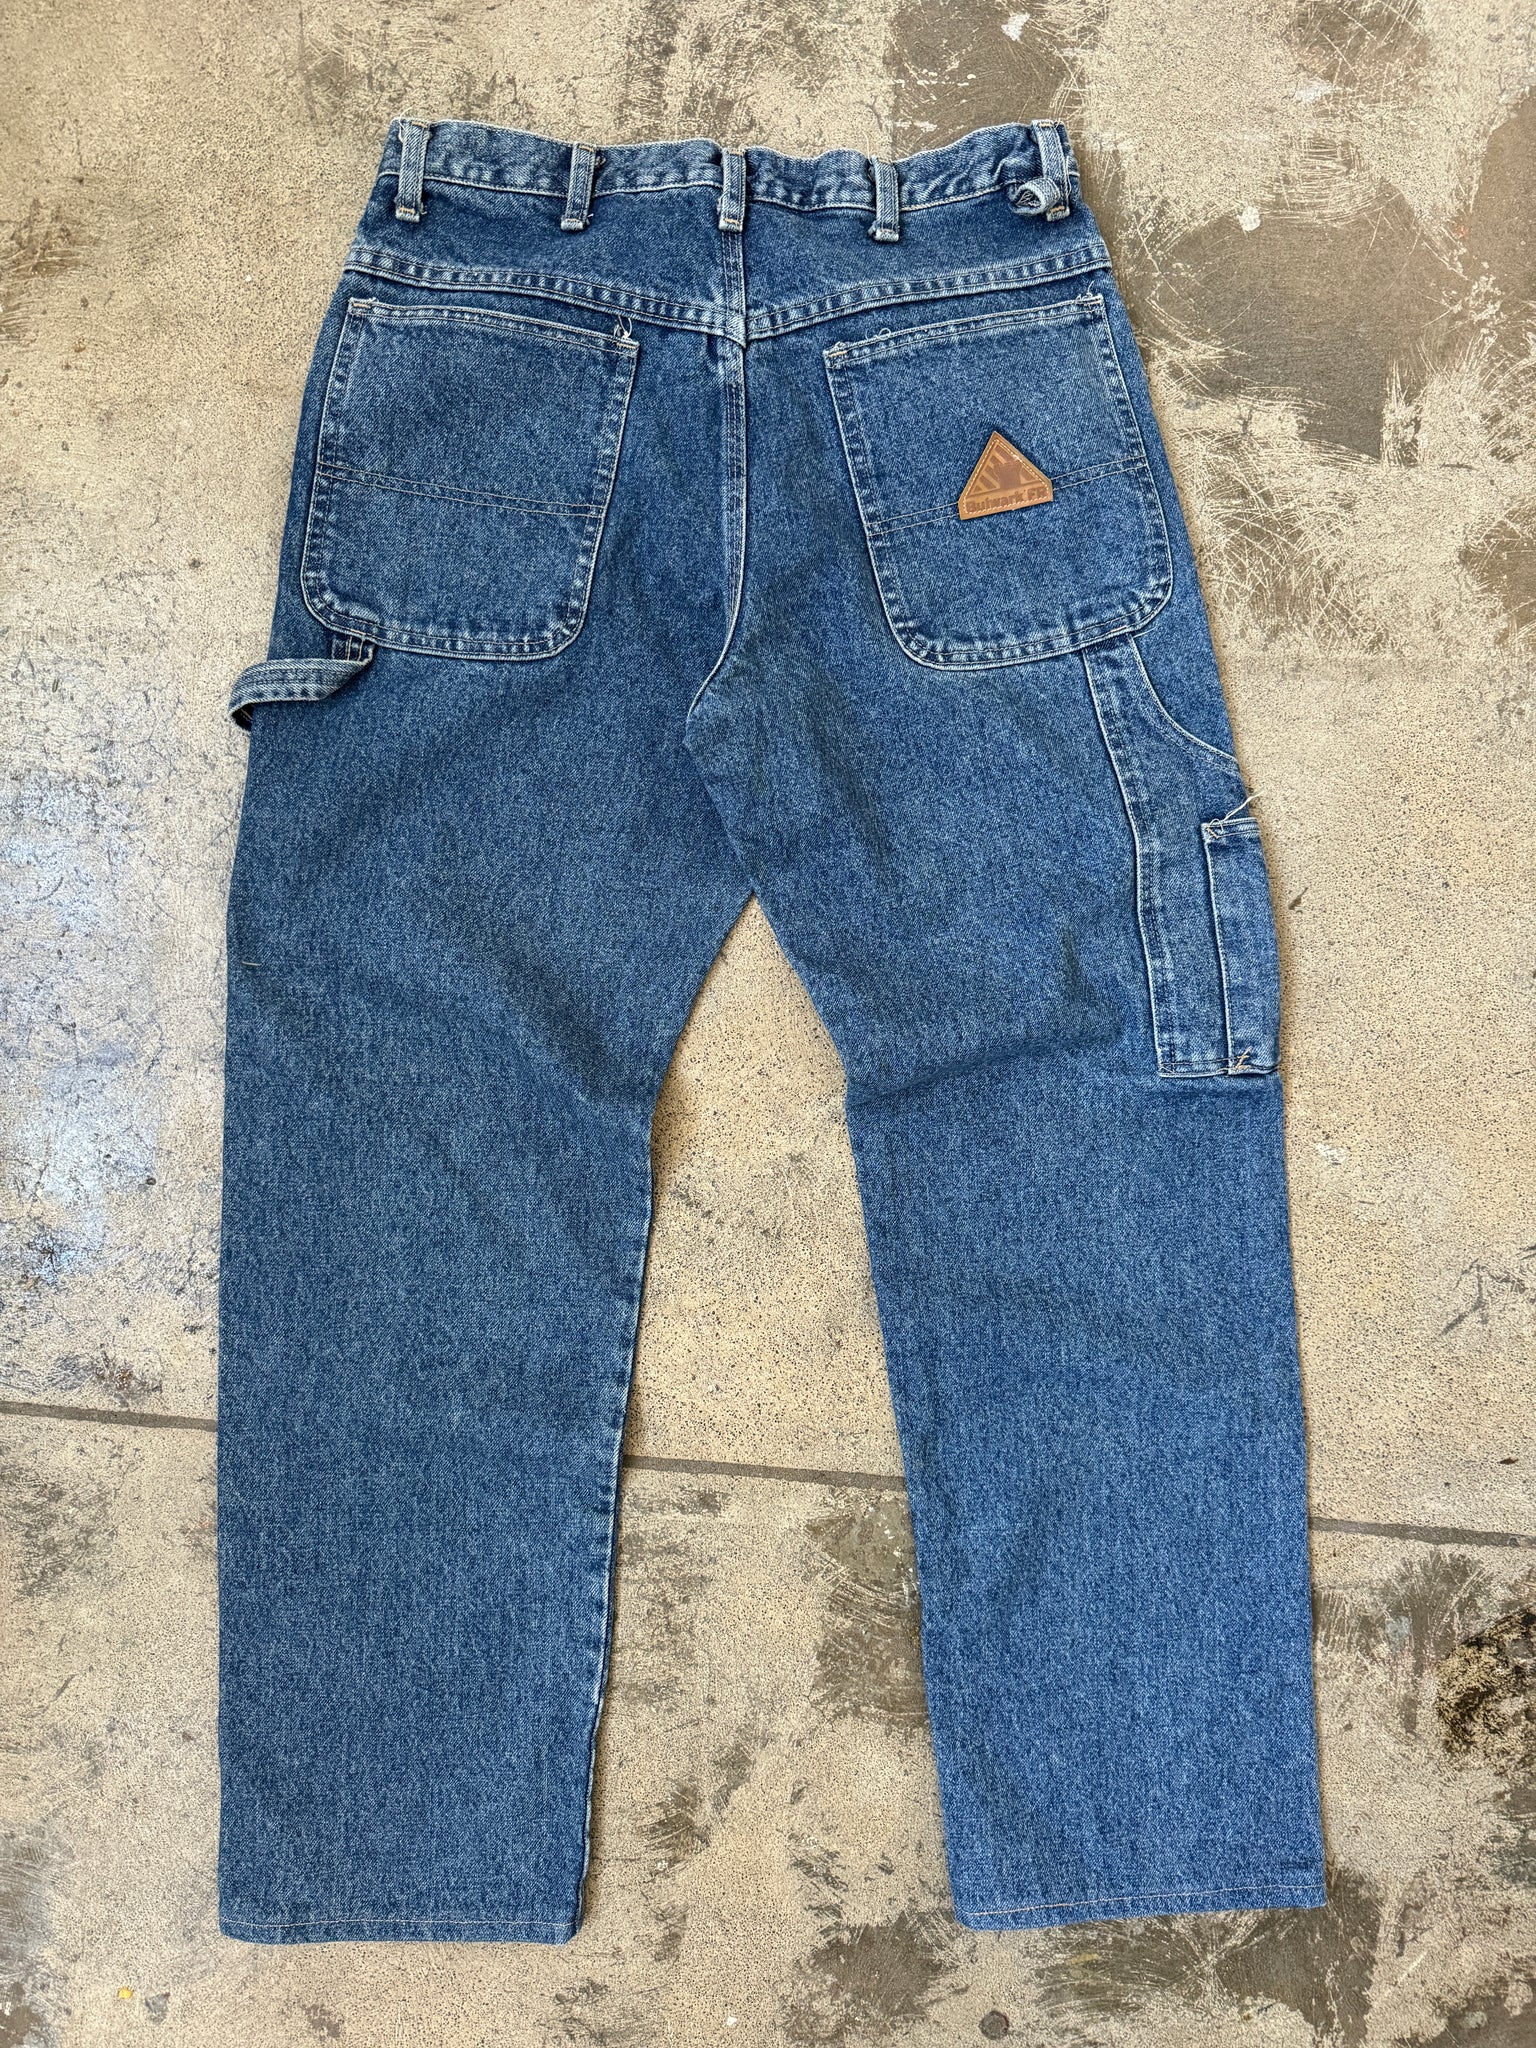 Vintage Bulwark Workwear Jeans (33)